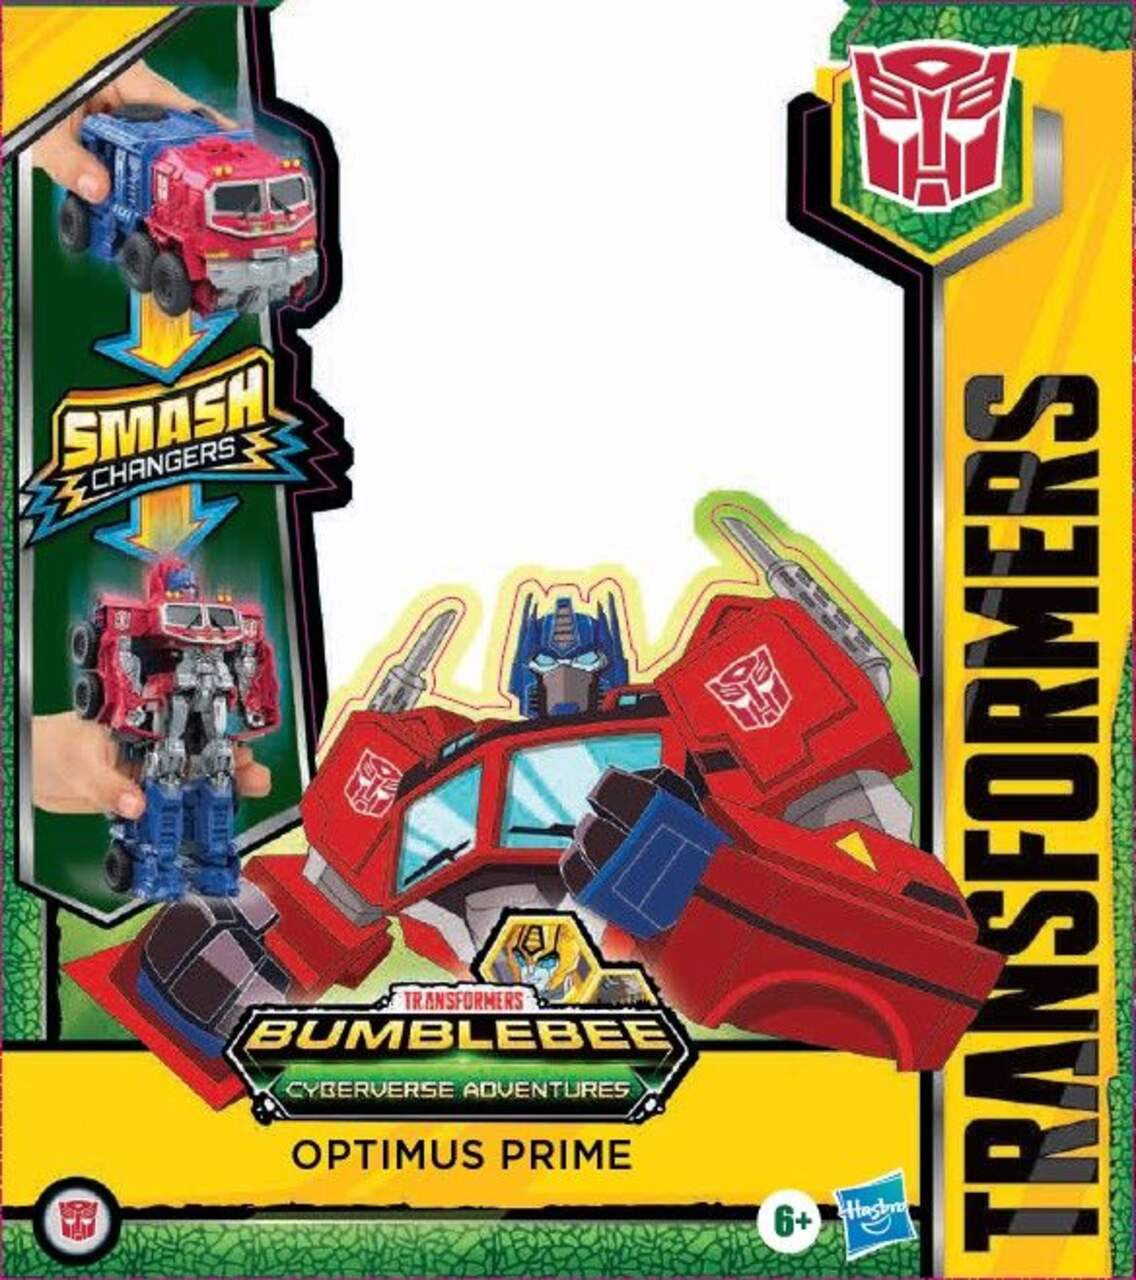 Jouet Transformers Smash Changers, choix varié, 6 ans et plus